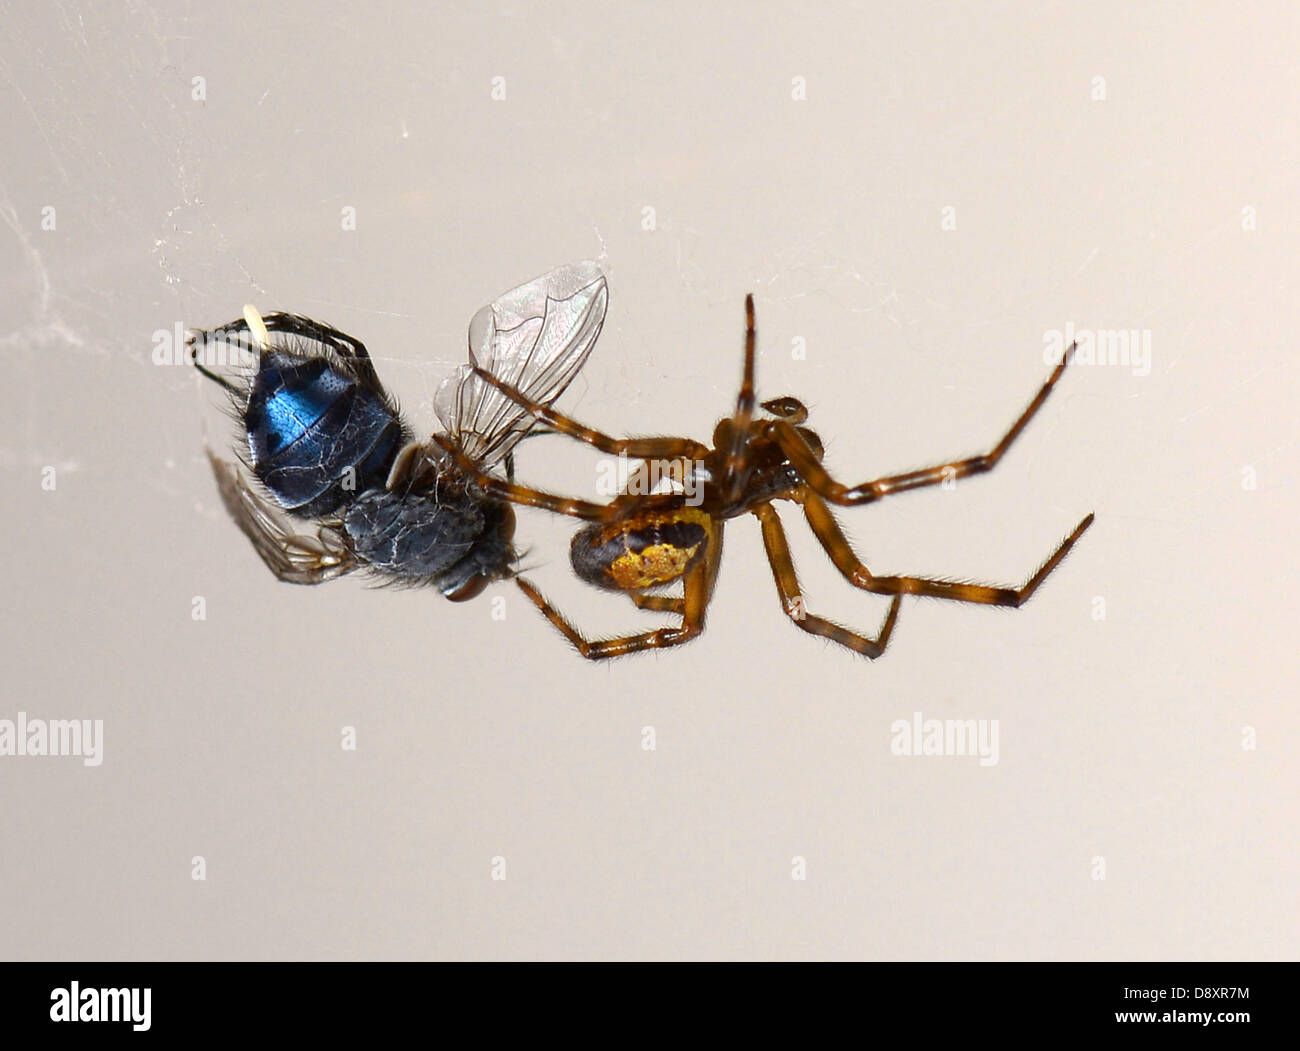 Steatoda nobilis, la "nobile false vedova" o "British black widow" 'falso vedova' spider mangiare una mosca Foto Stock